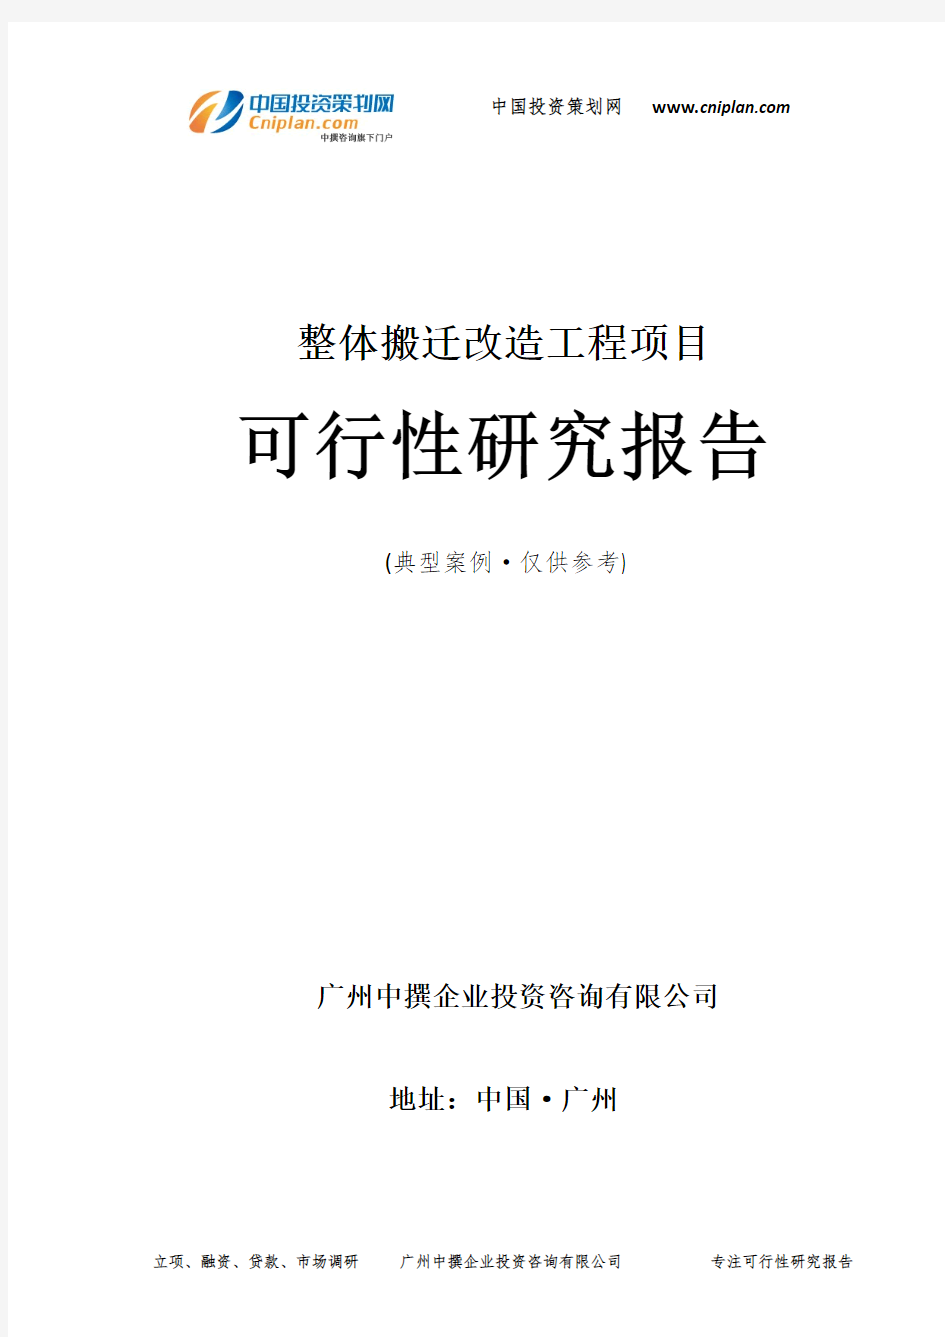 整体搬迁改造工程项目可行性研究报告-广州中撰咨询